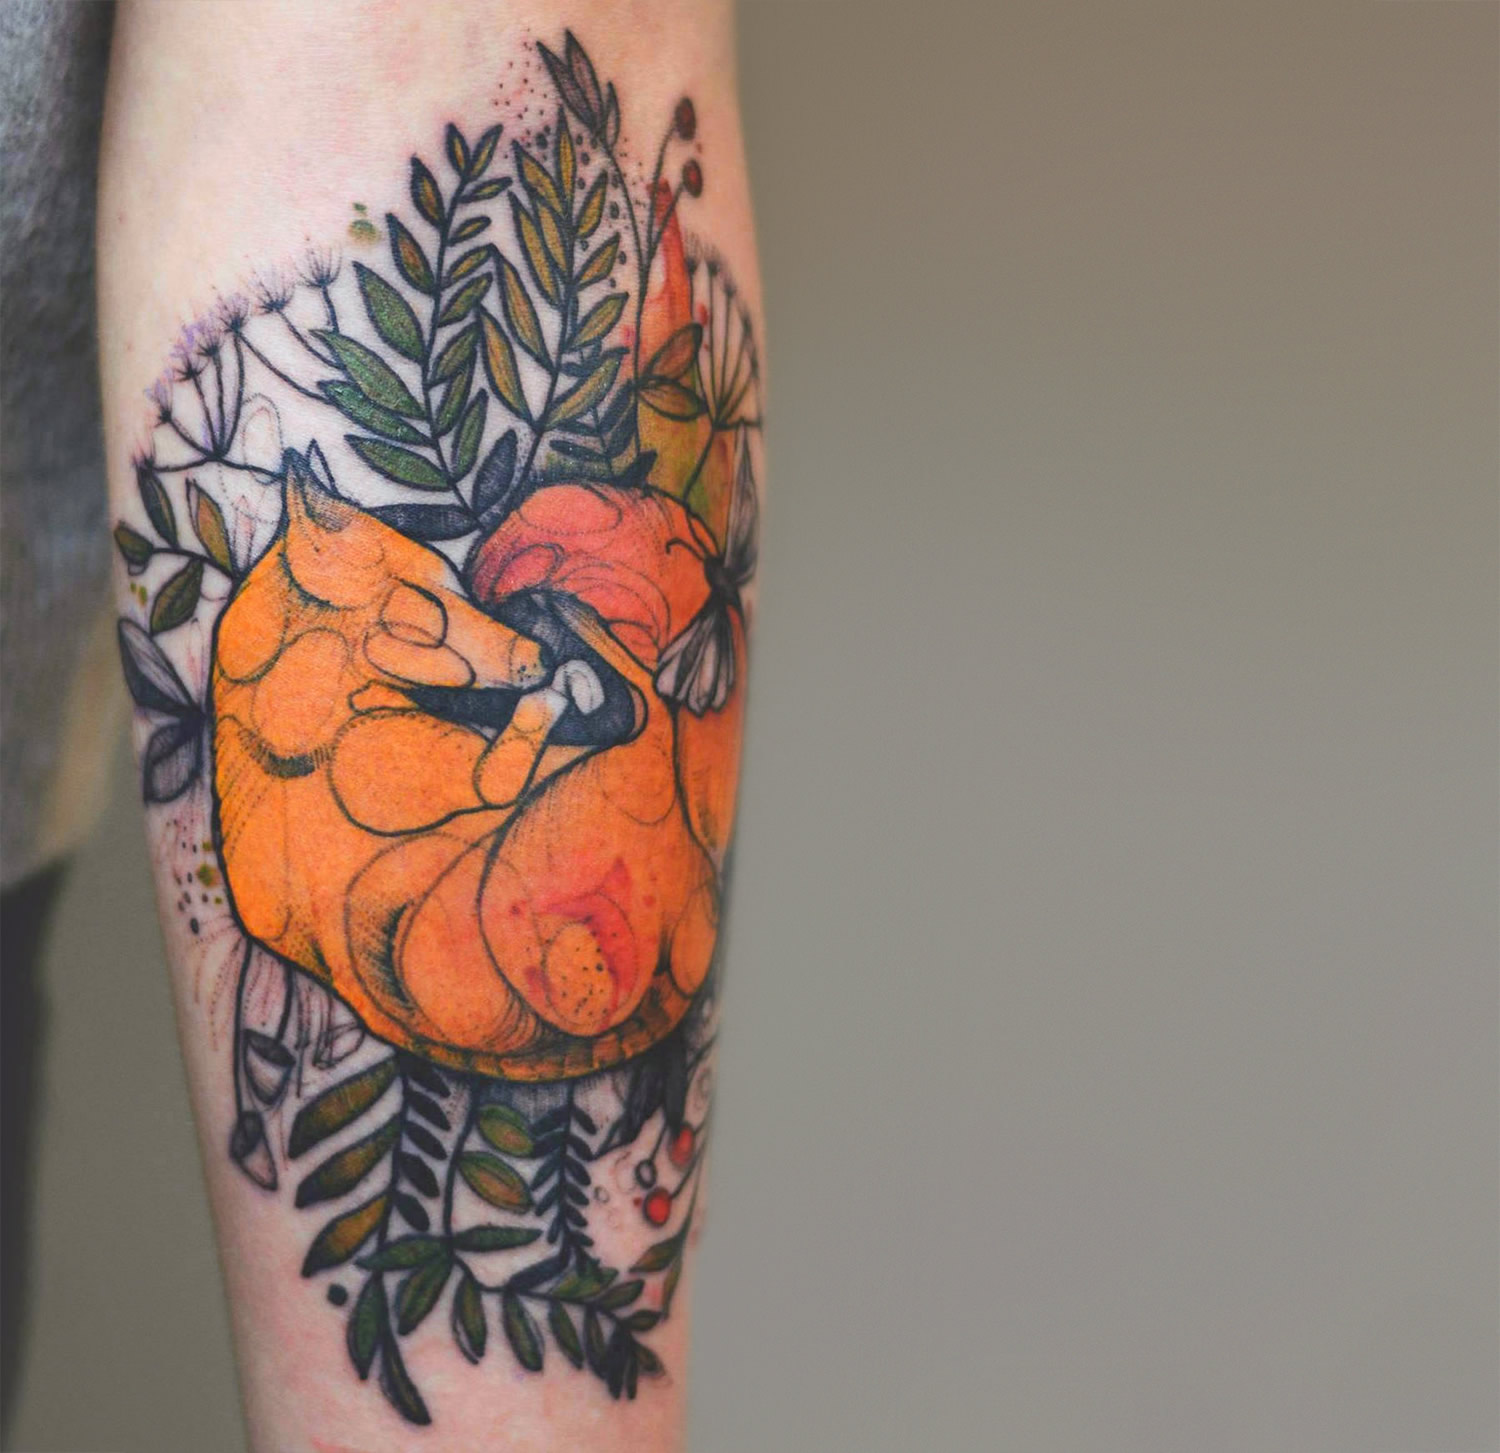 Joanna Swirska dzolama tattoo artist fox tattoo